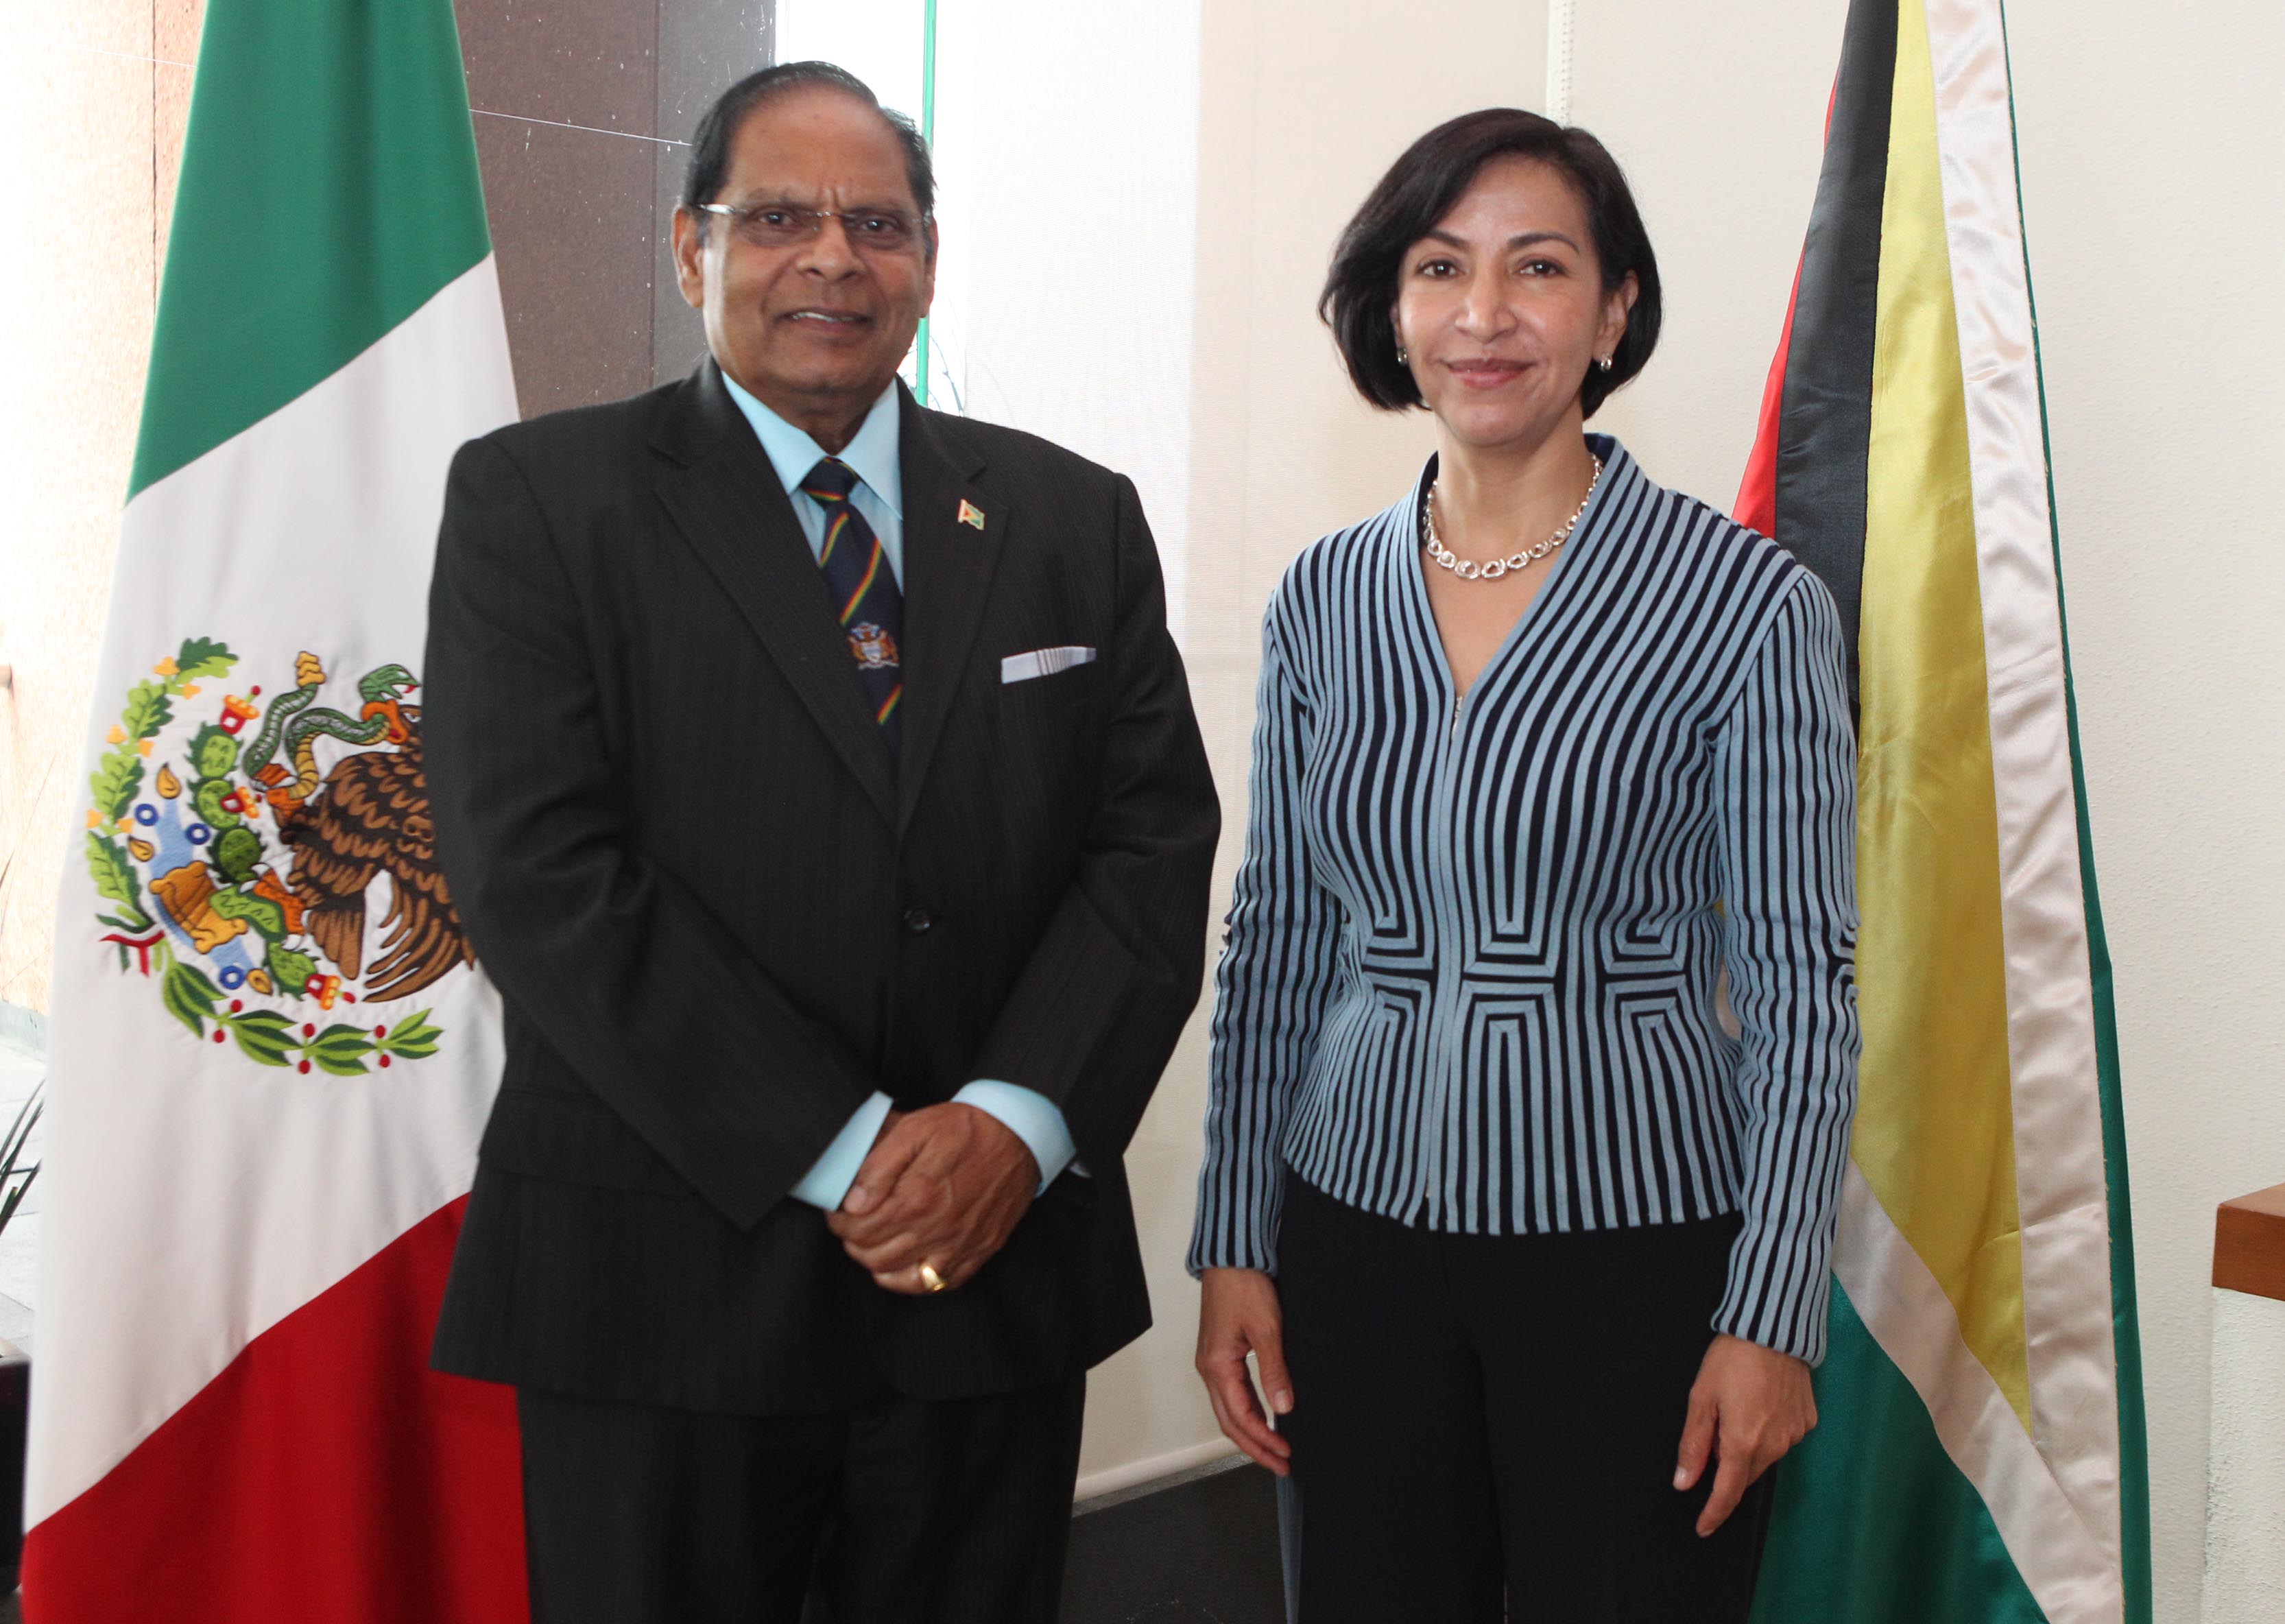 FOTO Subsecretaria Socorro Flores Liera con el Primer Ministro de la Rep blica Cooperativa de Guyana  Moses Nagamootoo.jpg